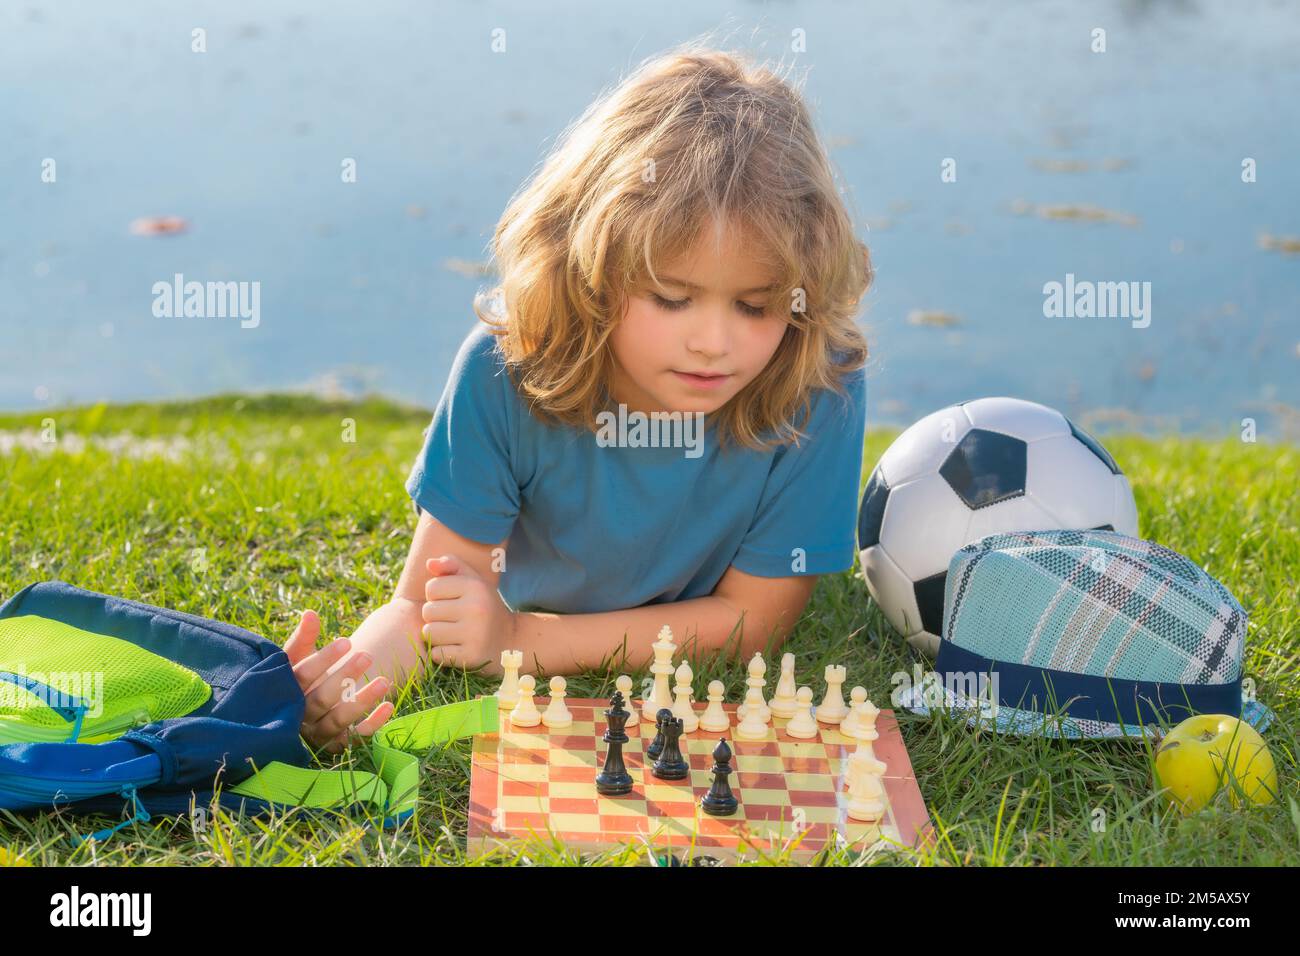 Gamin intelligent jouant aux échecs. Un enfant intelligent qui pense aux échecs. Banque D'Images